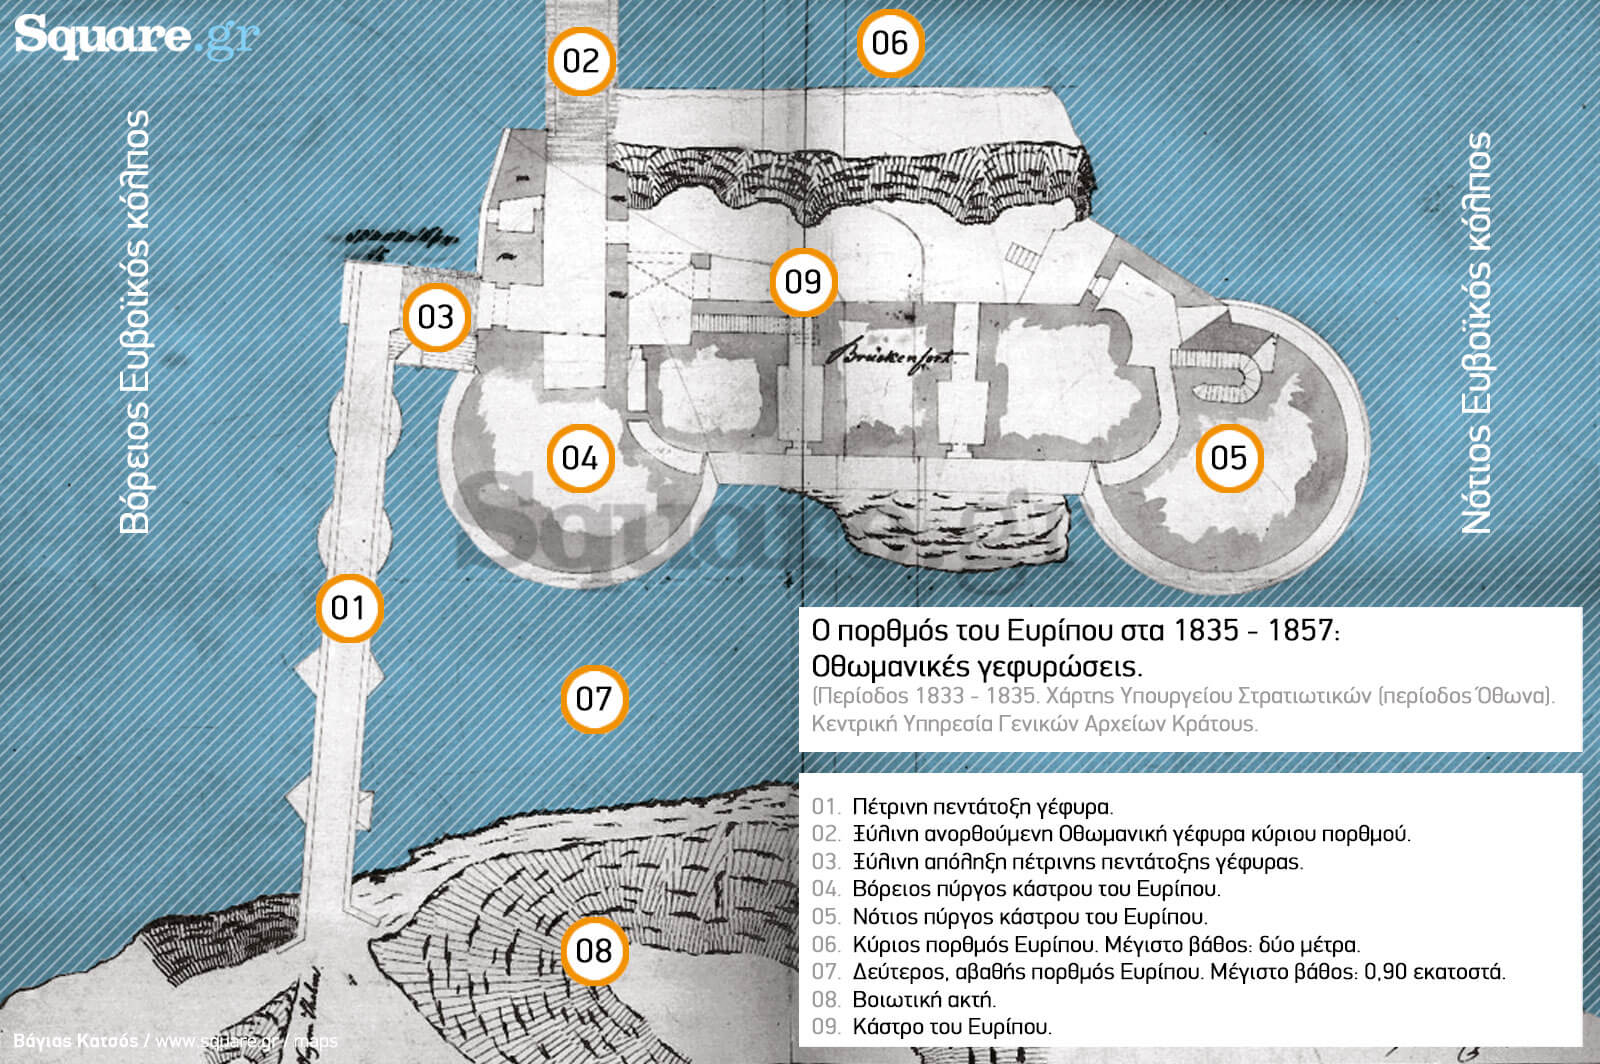 6-Γ-IX-α1-Γέφυρα-Χαλκίδος-1833---1835-Υπουργείο-Στρατιωτικών-(περίοδος-Όθωνα)-Κεντρική-Υπηρεσία-ΓΑΚ-7-επεξηγηματικός-χάρτης